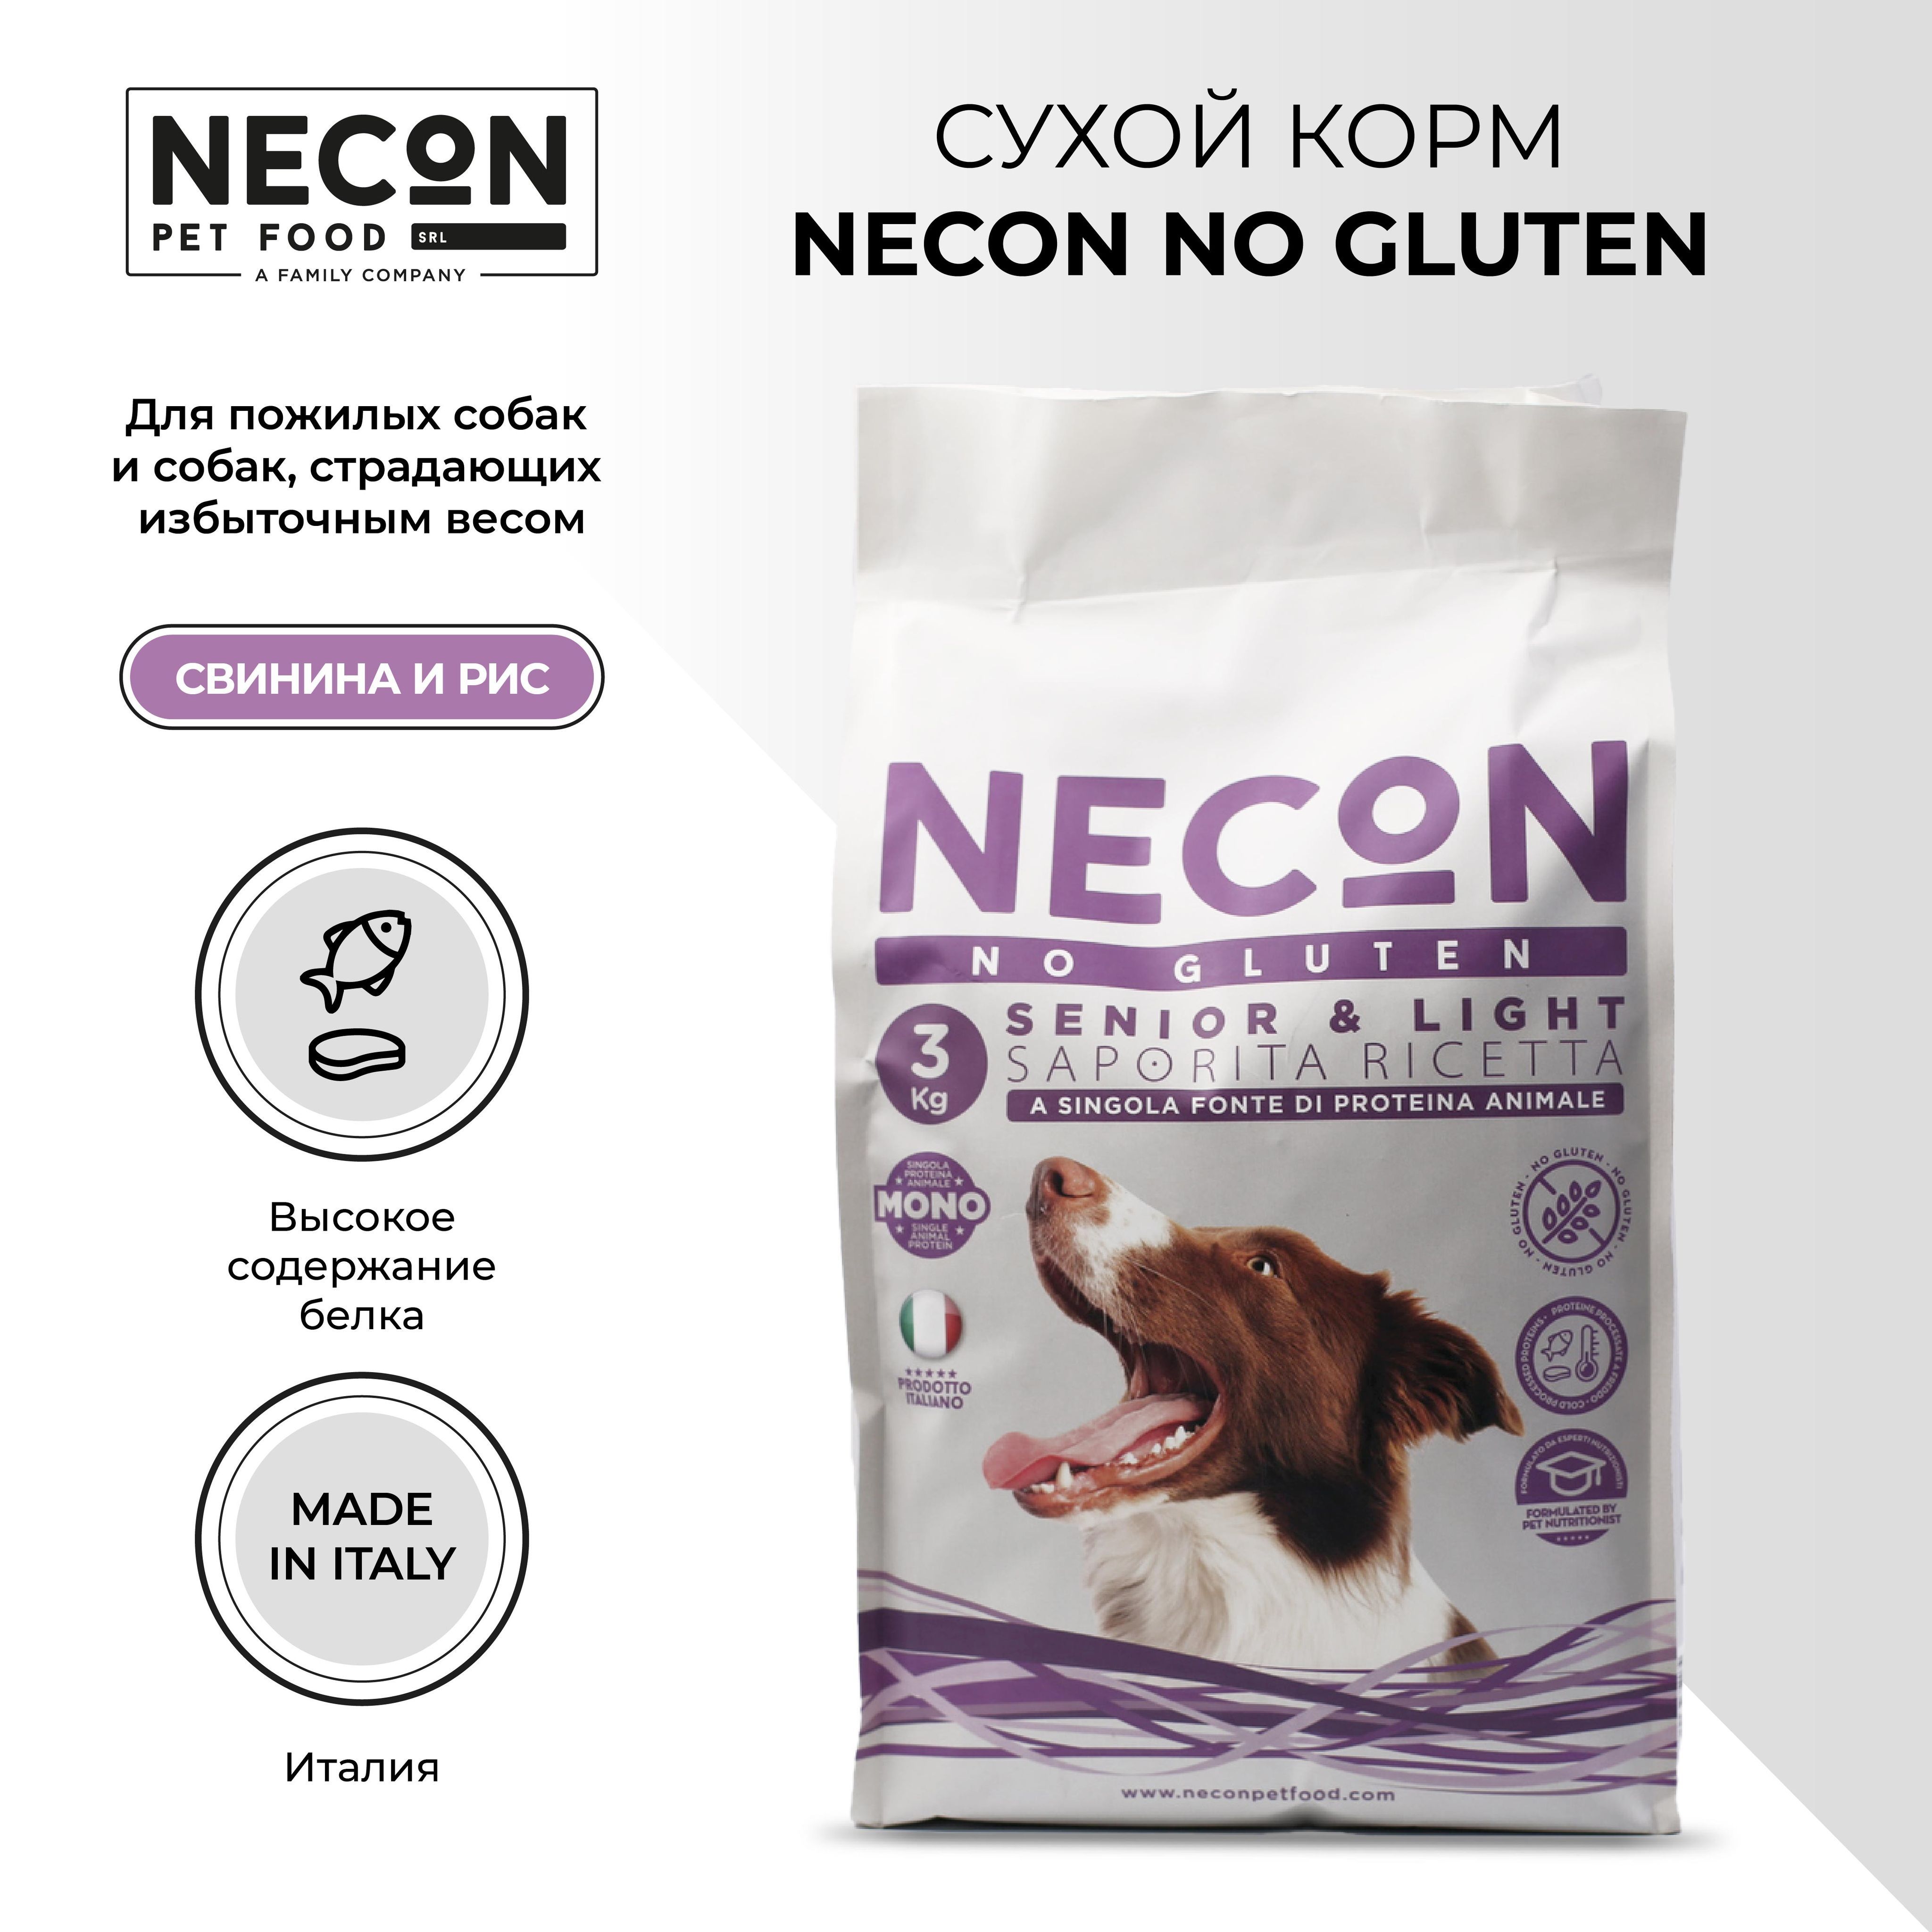 Сухой корм для собак Necon Zero Gluten Senior&Light, свинина и рис, 3 кг